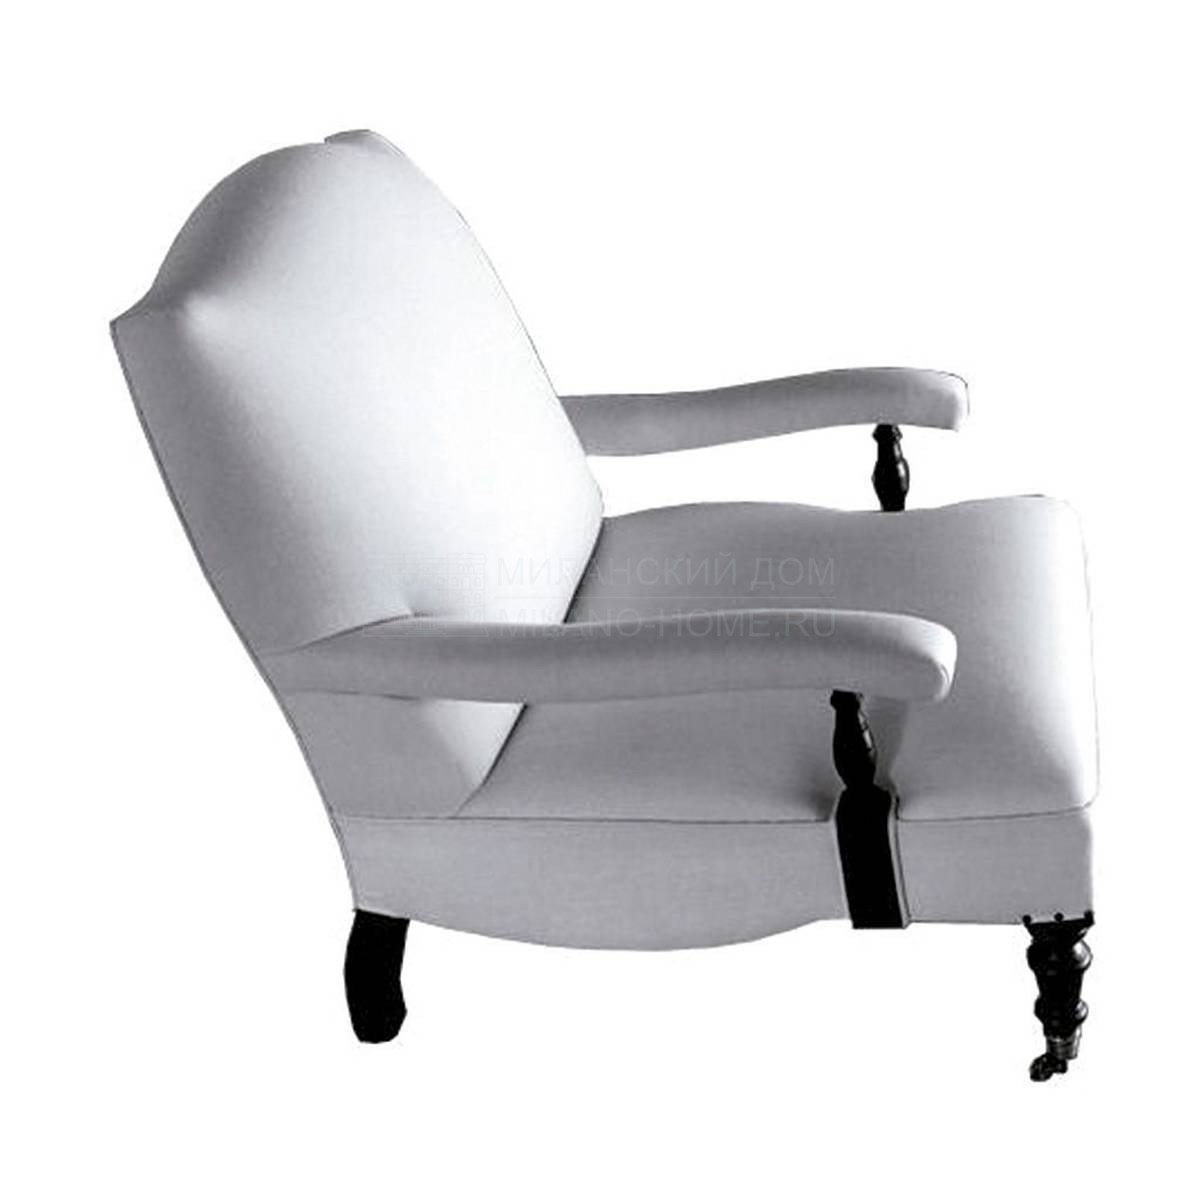 Кресло Z-8114 armchair из Испании фабрики GUADARTE